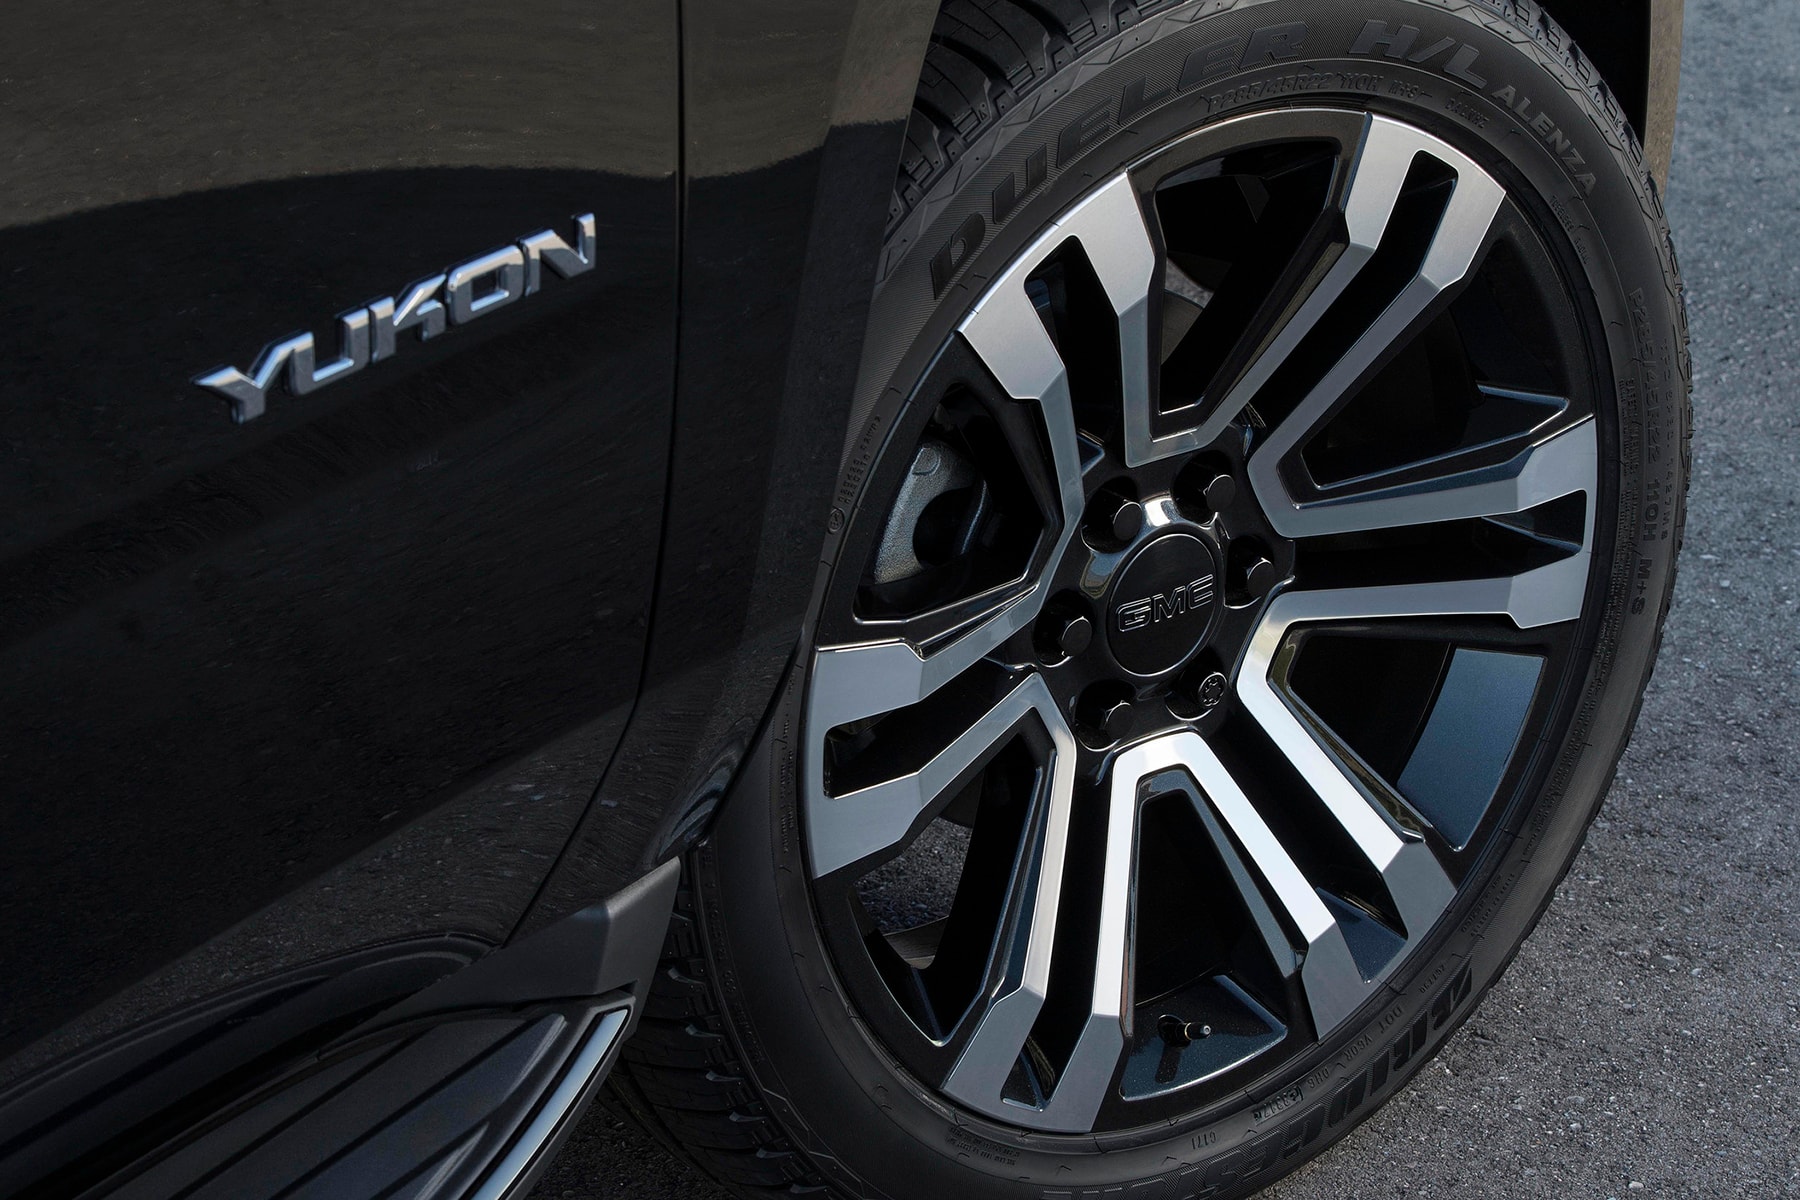 ヴィン・ディーゼルの愛車 GMC Yukon から上位モデルに匹敵する “Graphite Edition” が登場  10速オートマチックトランスミッションと420馬力の6.2L V8エンジンを搭載した漆黒のフルサイズSUV 『ワイルド・スピード』でDominic Toretto（ドミニク・トレット）役を演じるVin Diesel（ヴィン・ディーゼル）の愛車としてもお馴染みのGMC YukonとYukon XLから、“Graphite Edition”の名を冠した新モデルが登場。ルーフレールからグリル、フォグランプ周辺、窓縁に至るまで、ボディの全てをブラックで統一した漆黒のフルサイズSUVは、標準ボディのYukon、ロングボディタイプのYukon XLともに無骨な22インチホイールを履いているが、前者はシルバーのホイールを剥き出しに、後者はそこにブラックのペイントを施している。  パフォーマンスバージョンには高級グレードであるDenaliと同じく、磁気サスペンションと420馬力を発揮する6.2L V8エンジンを搭載。また、10速オートマチックトランスミッションと比率3.23:1のリアアクセルがその性能を最大限に引き出し、「Bose（ボーズ）」のノイズキャンセラー、170アンプのアルタネーター、トレーラーのブレーキ制御機など、要所のパーツクオリティも申し分ない。  価格帯などに関する詳細は明らかになっていないものの、“Graphite Edition”がDenaliよりも高価に設定されることは考えにくい。その他、性能などの追加情報は「GMC」からのアナウンスを待とう。  SUV好きの方は、高級感が360°から放たれるInfiniti QX80のリミテッドエディションもあわせてチェックしてみてはいかが？